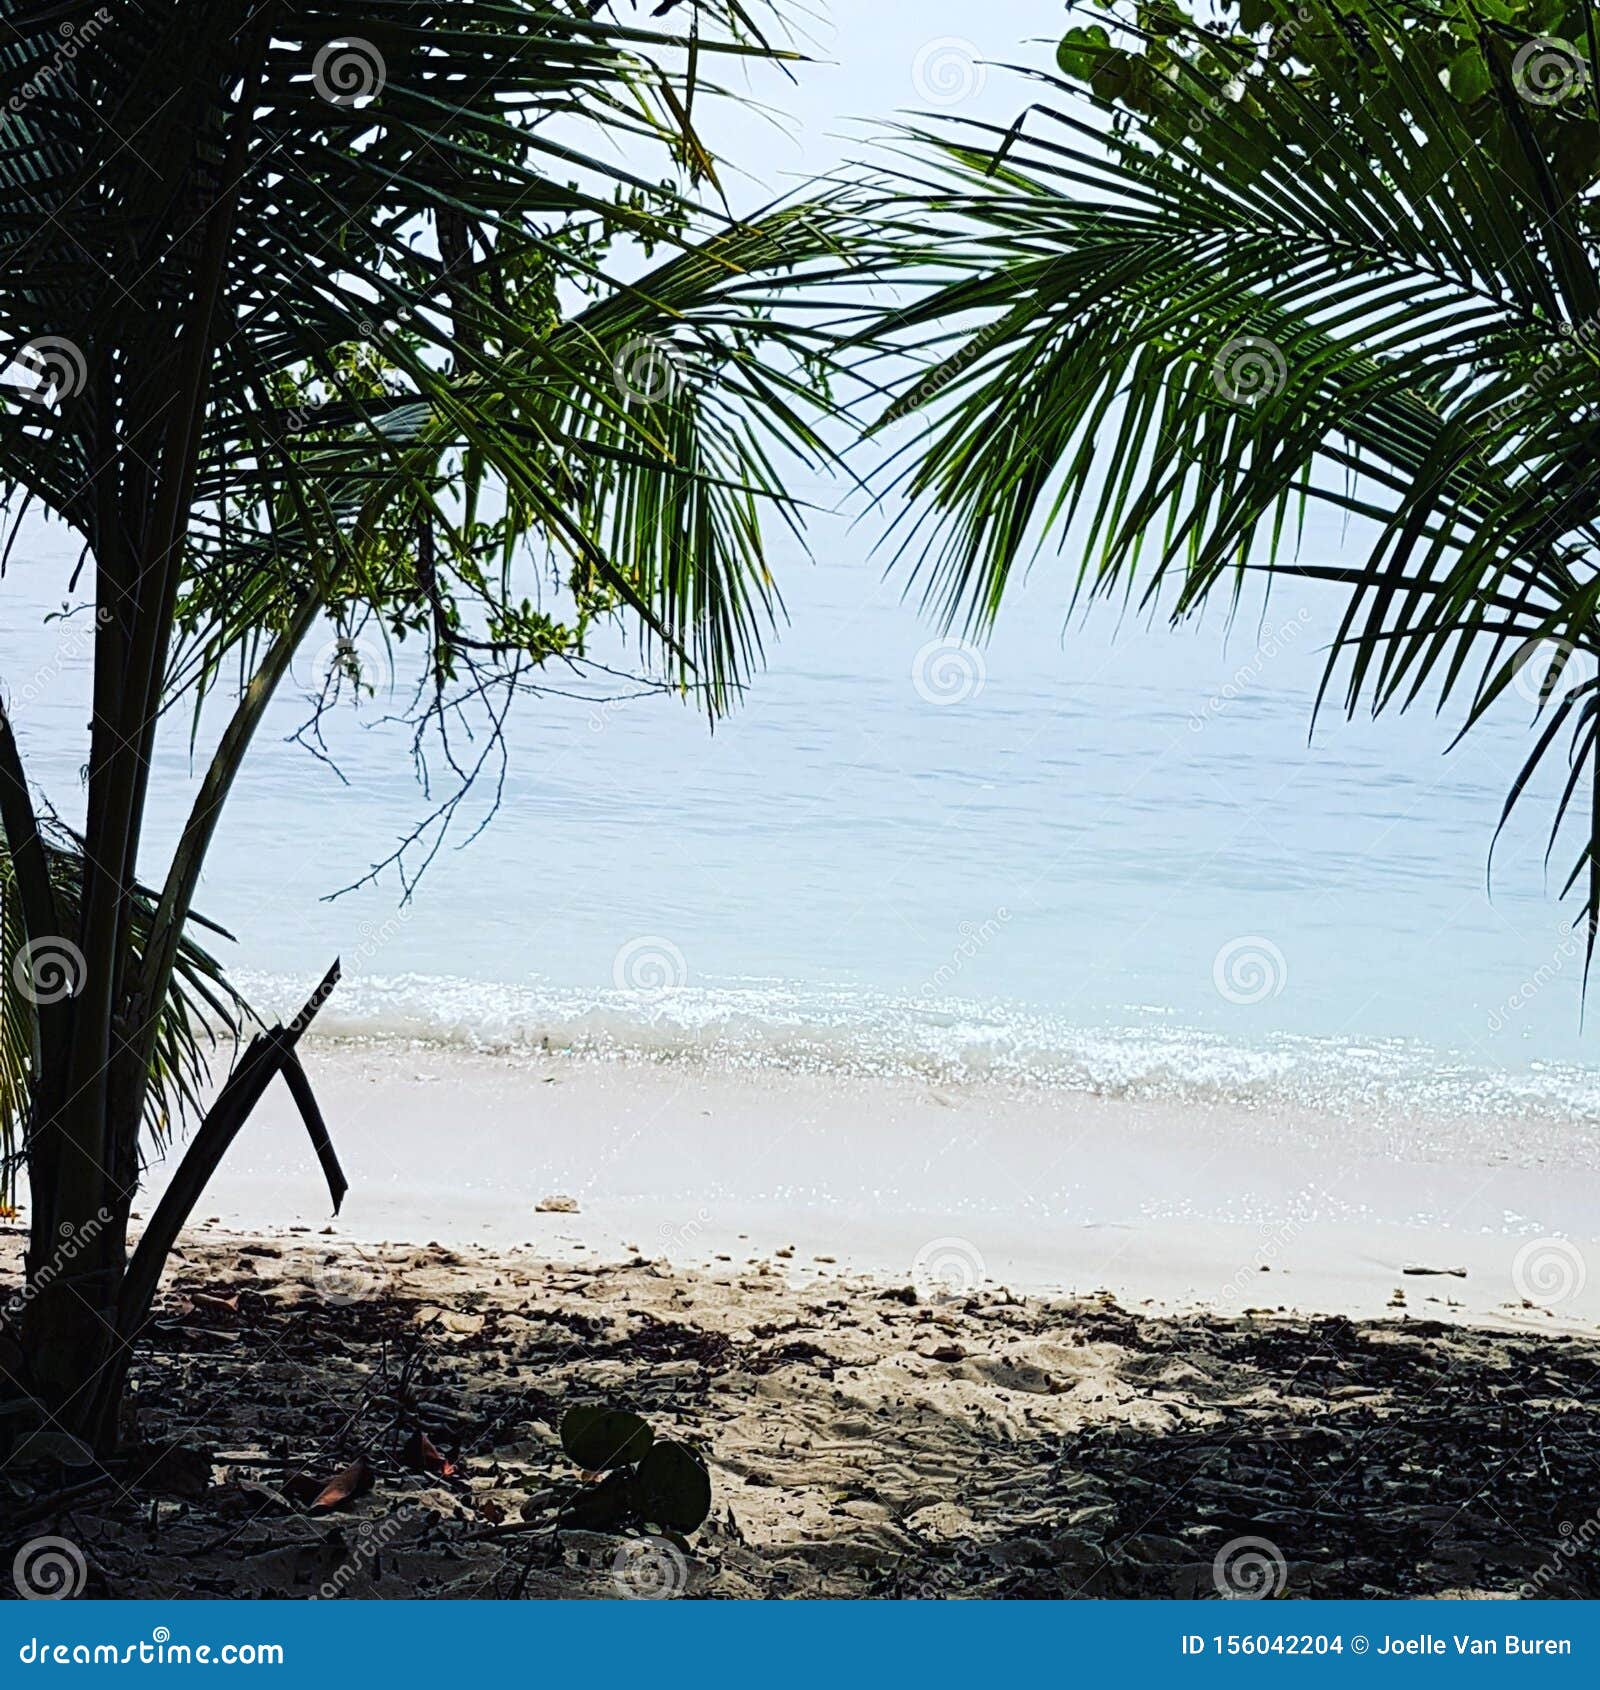 palm beach in costarica